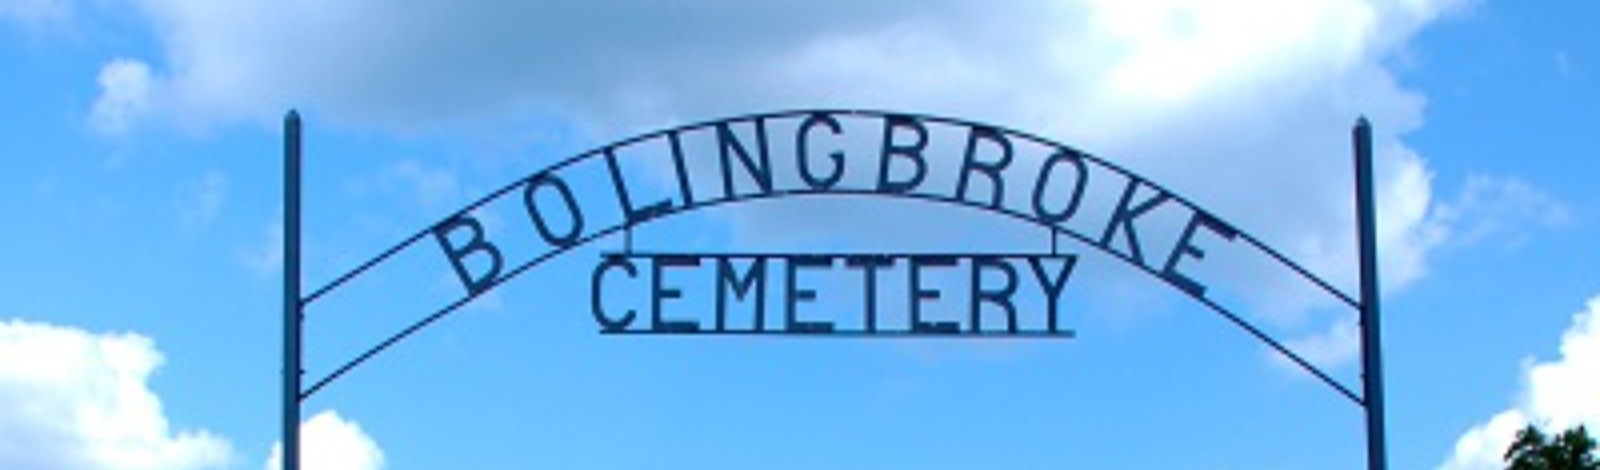 Bolingbroke Cemetery sign